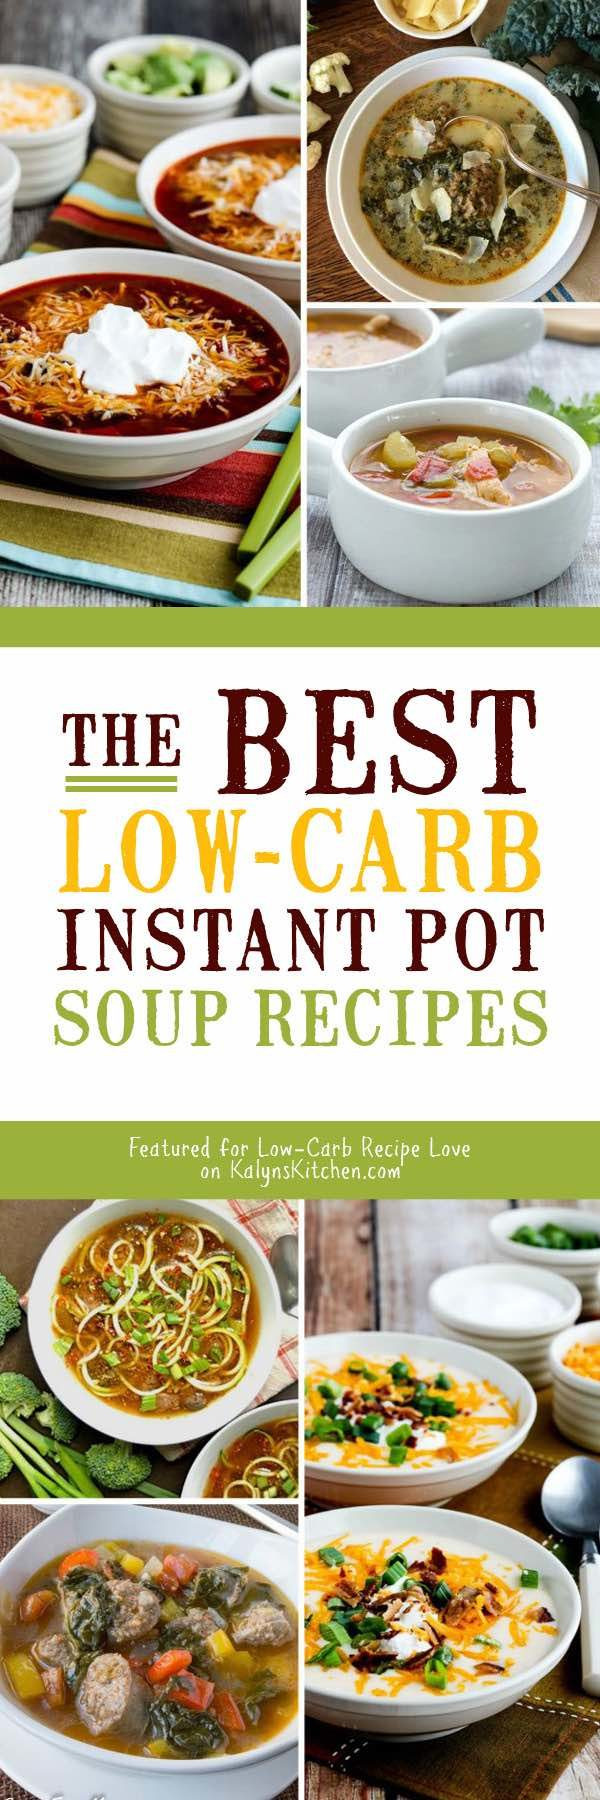 Instant Pot Low Carb Recipes
 The BEST Low Carb Instant Pot Soup Recipes Kalyn s Kitchen